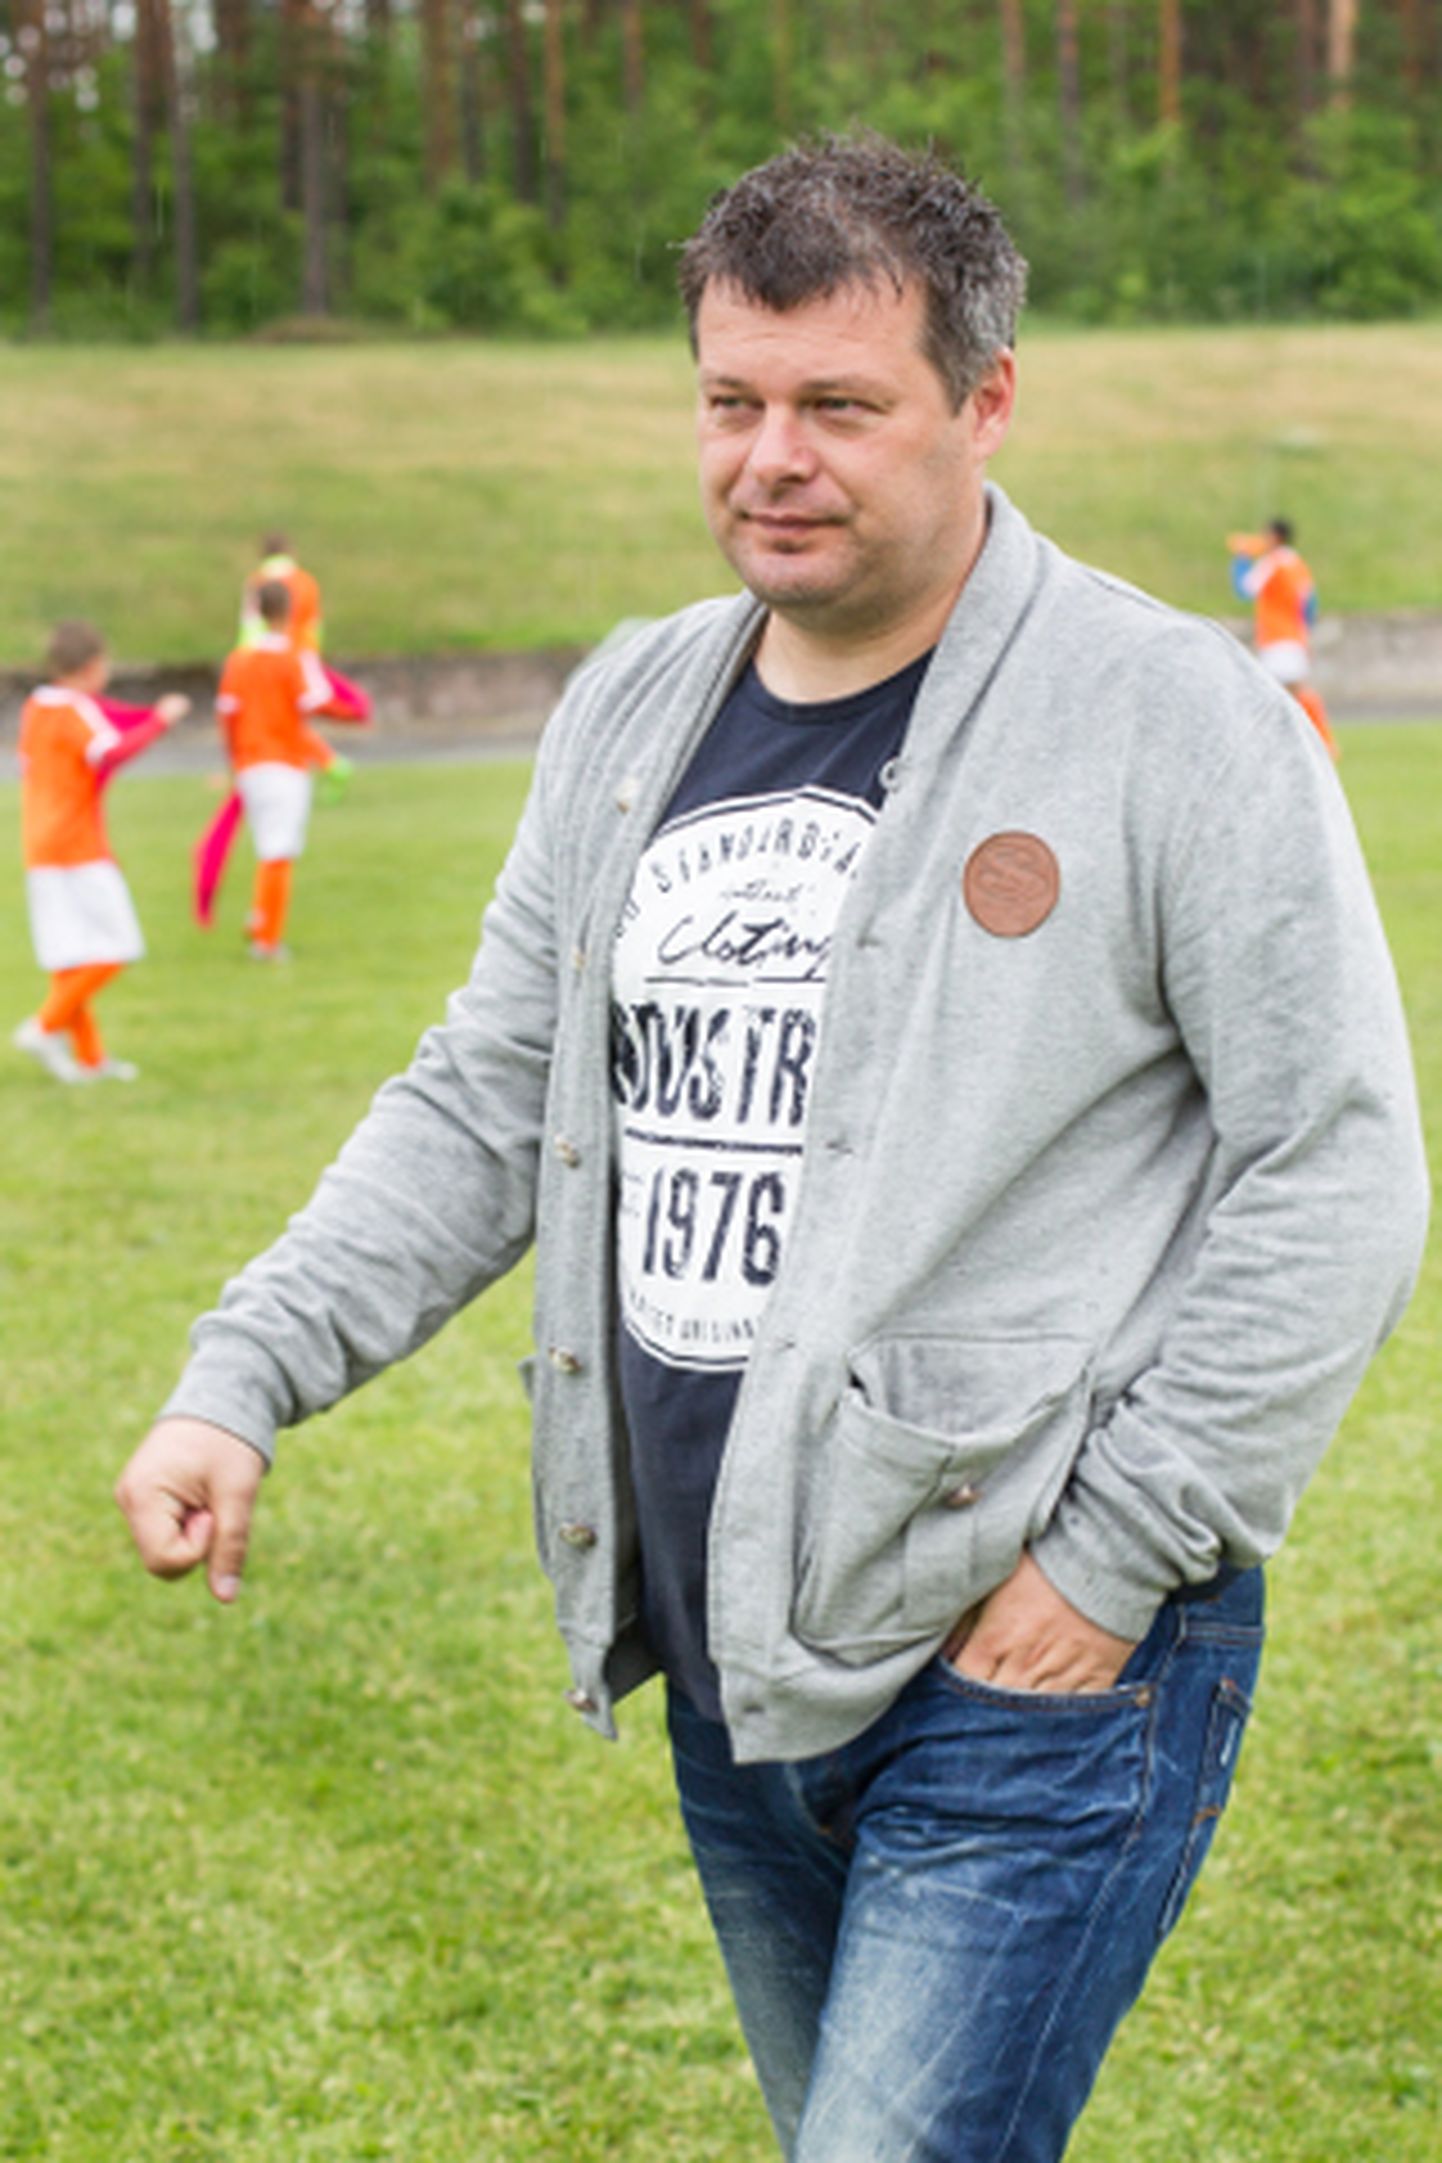 Marko Kristal püüab seista selle eest, et Ida-Virumaa noored ja andekad mängijad Eesti jalgpallile kaotsi ei läheks.